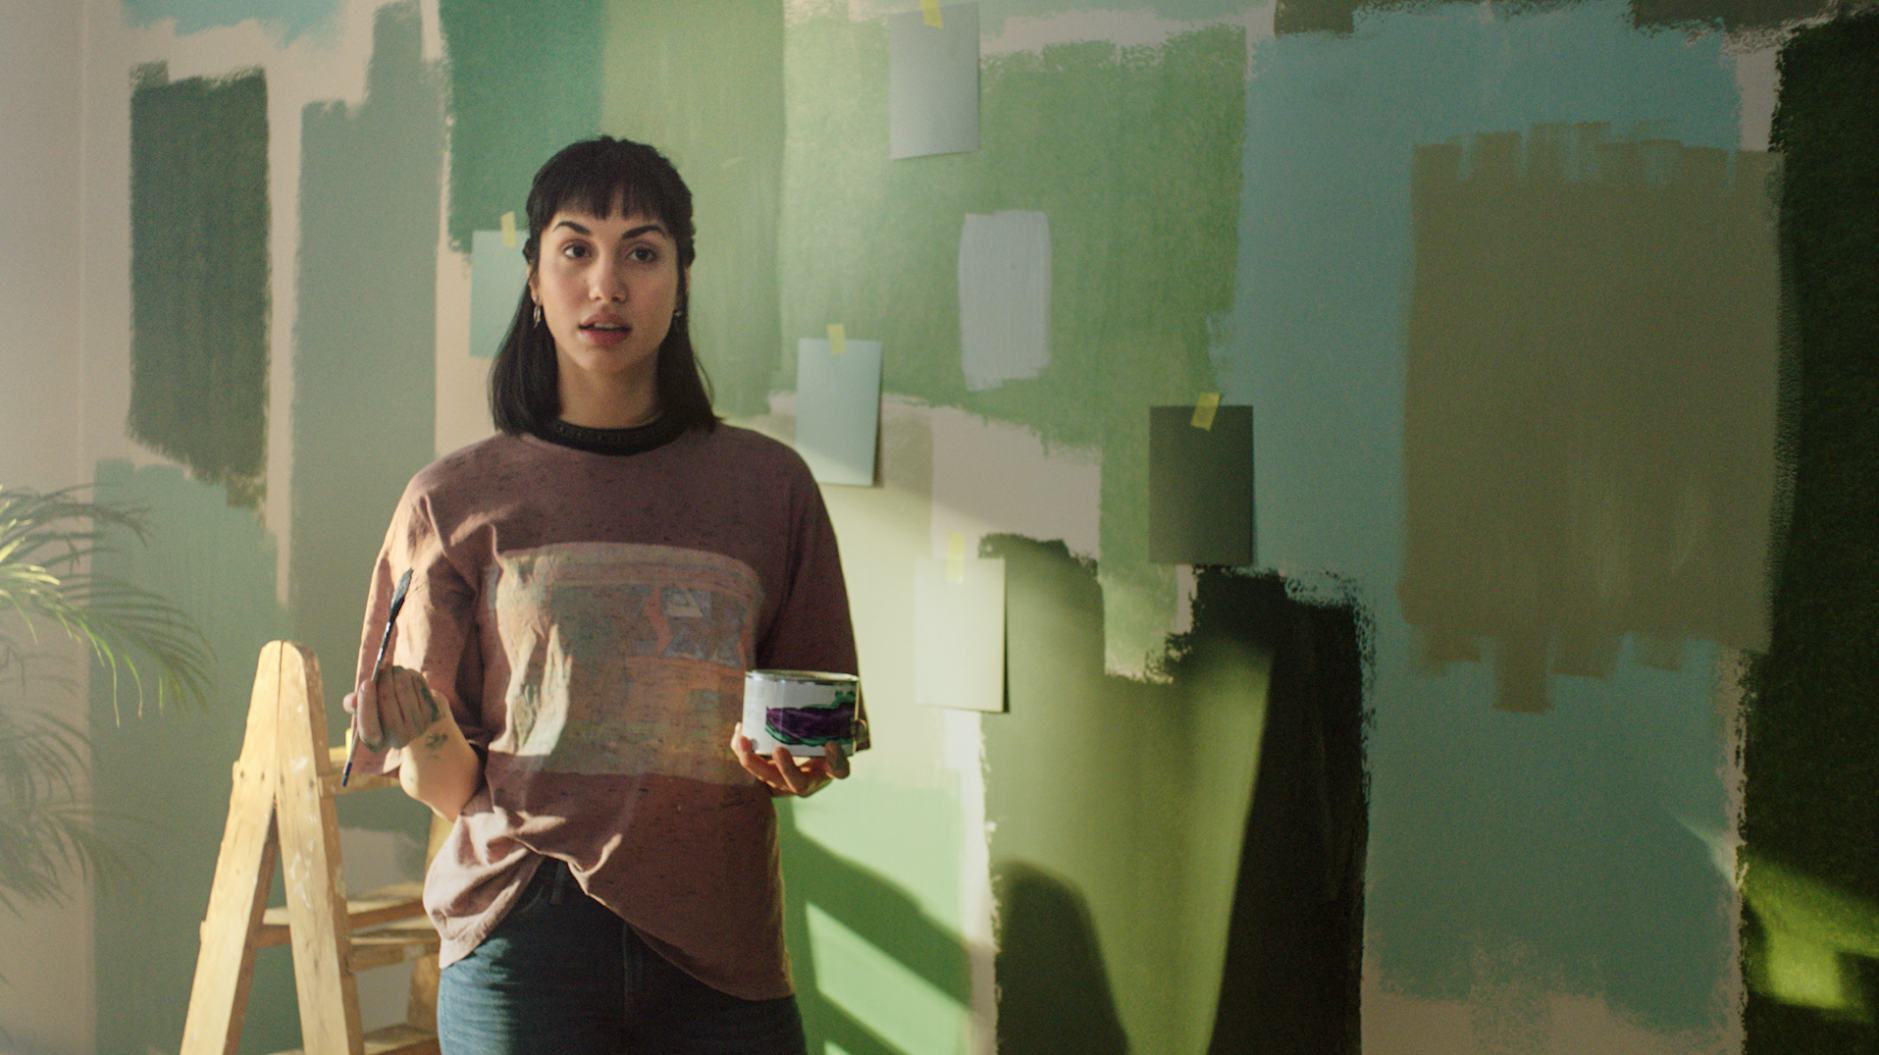 Kvinna provmålar olika nyanser av grönt på väggen